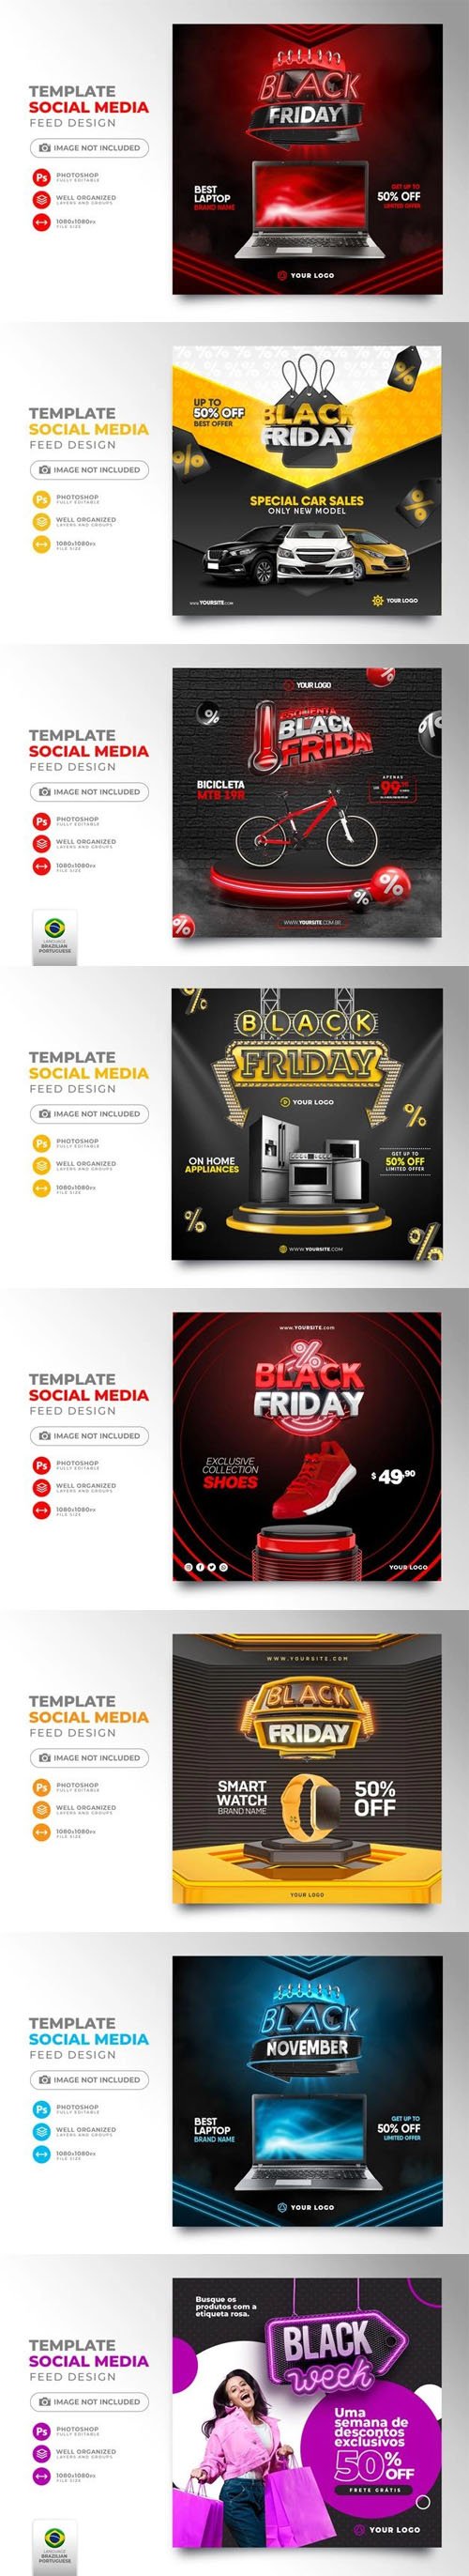 Black Friday Social Media Posts - 3D Render PSD Templates